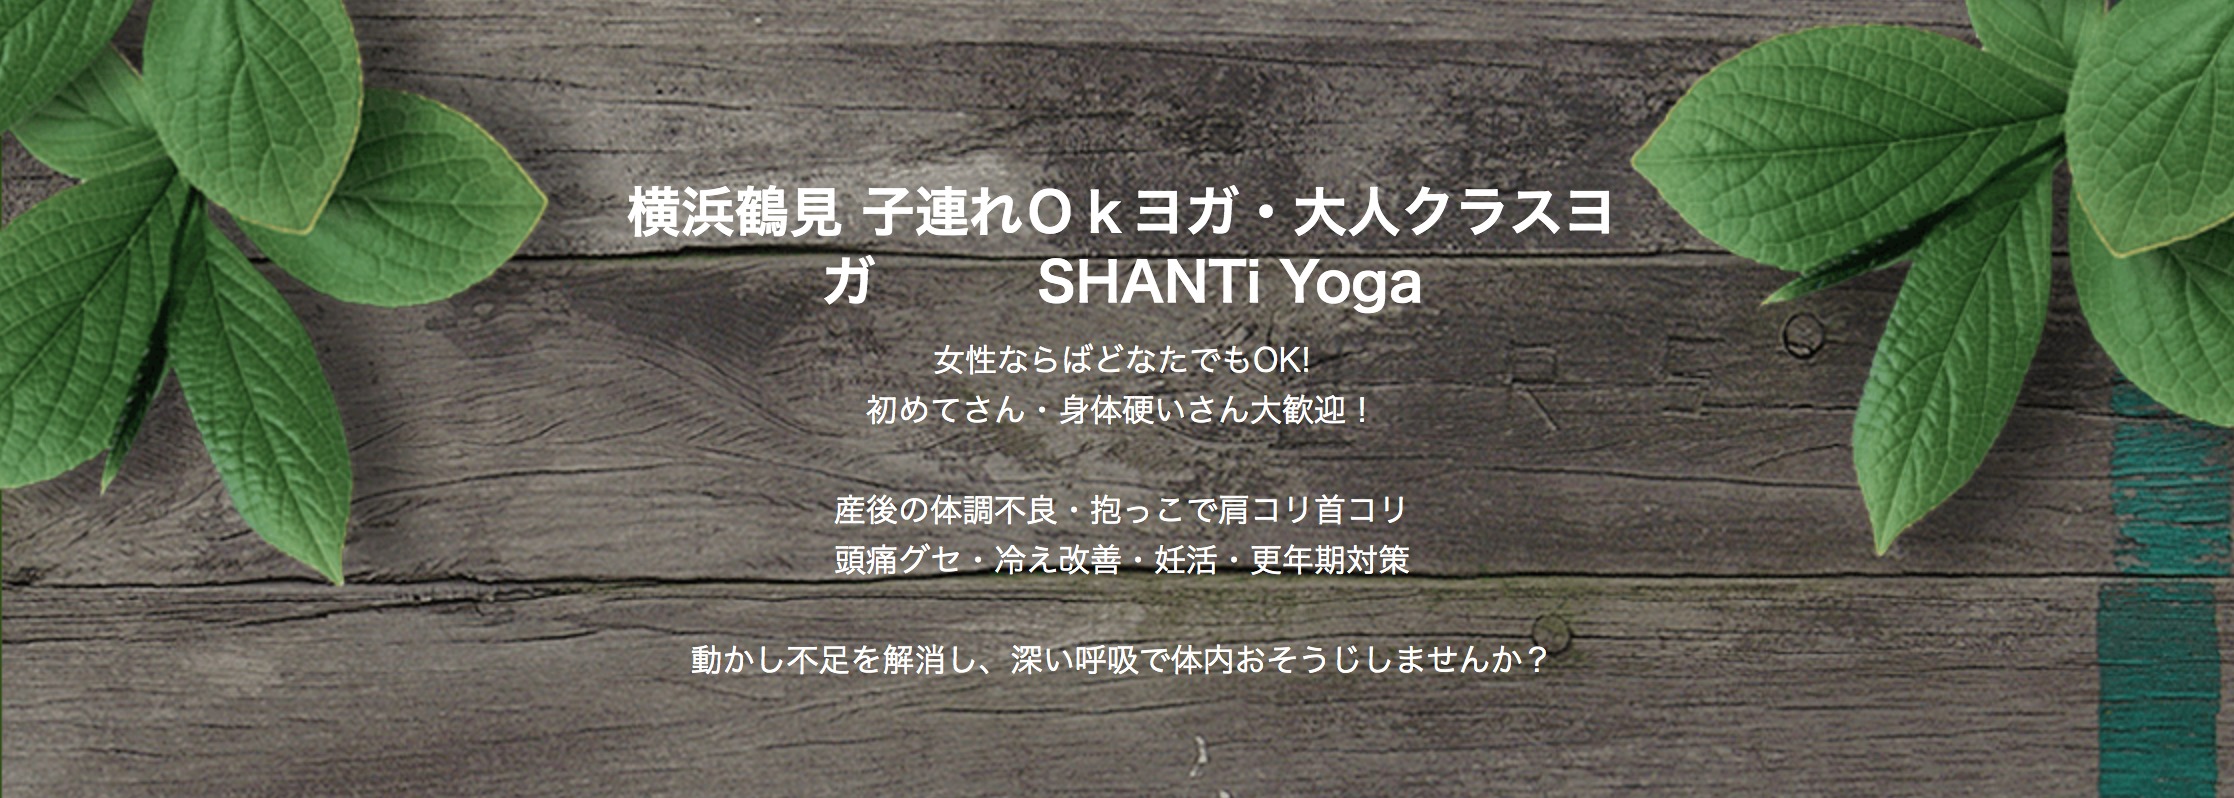 子連れヨガ SHANTi Yogaの施設画像